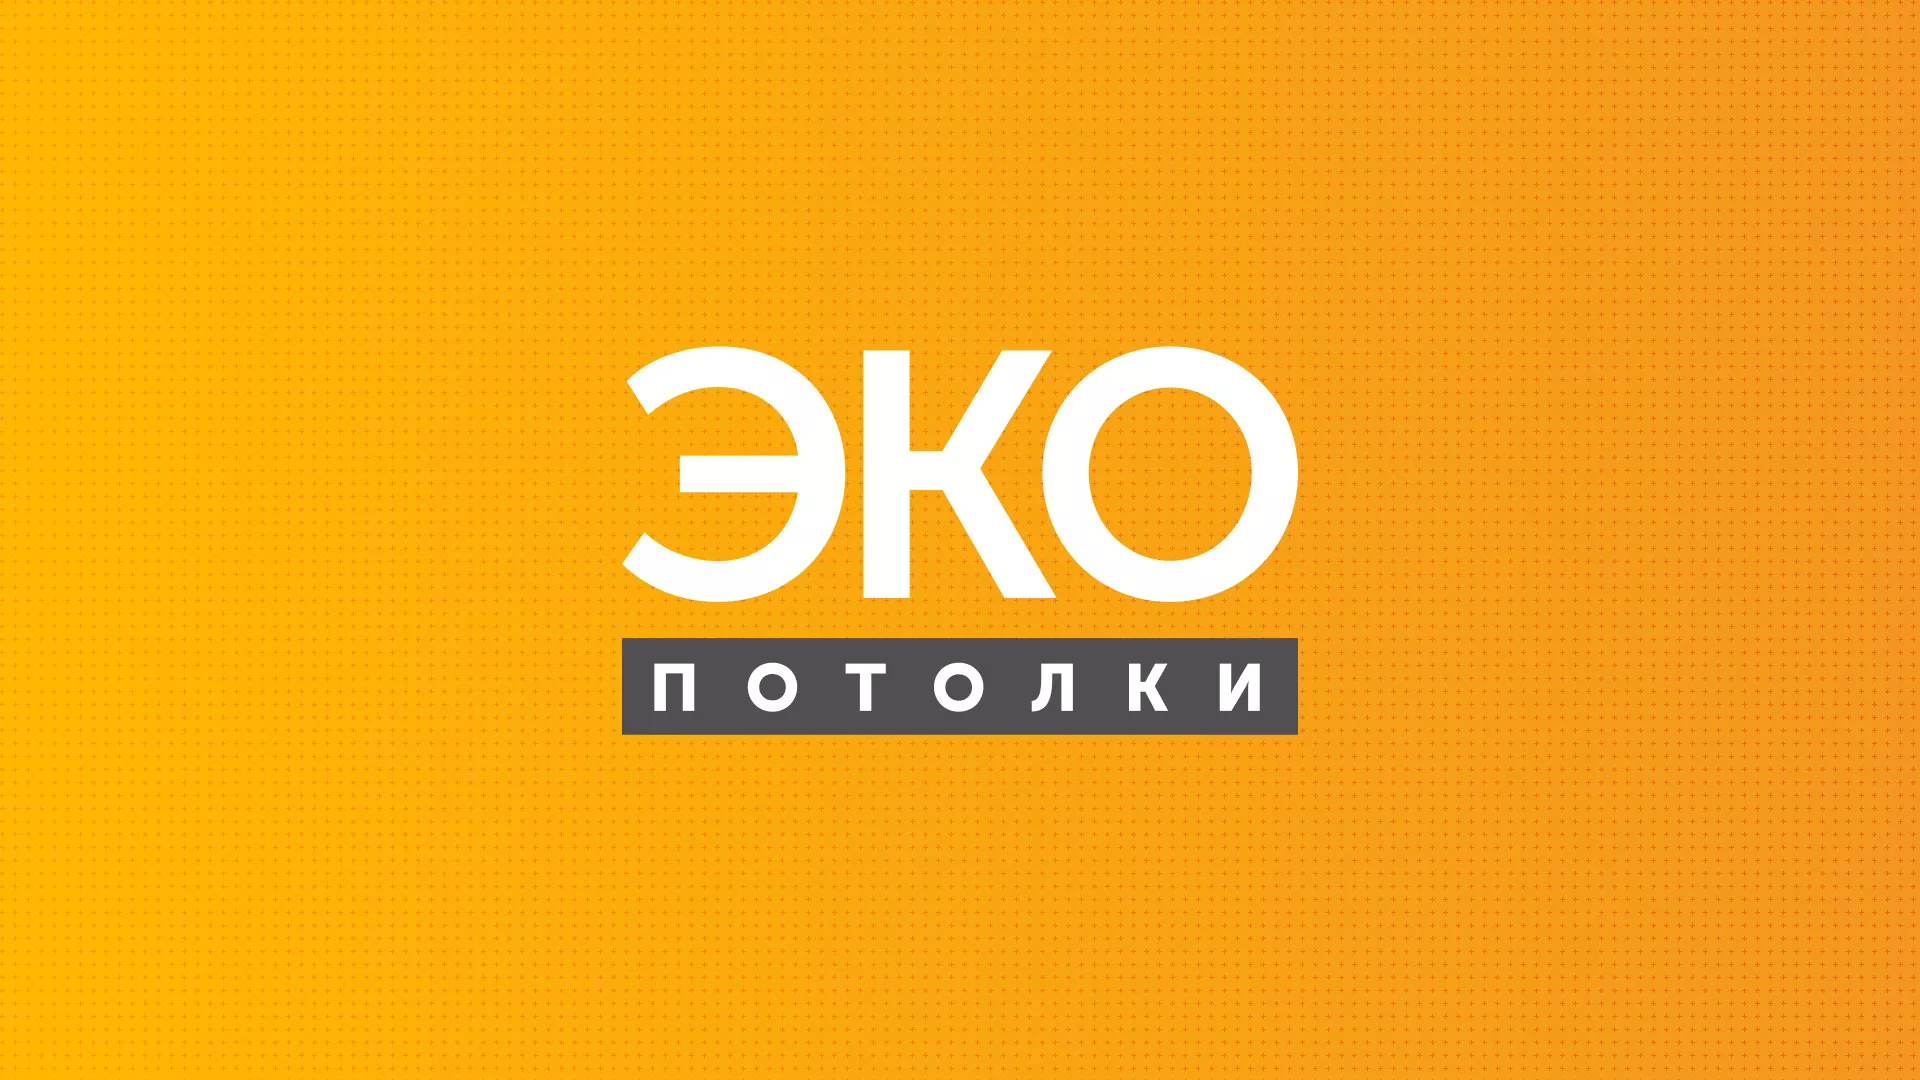 Разработка сайта по натяжным потолкам «Эко Потолки» в Зернограде